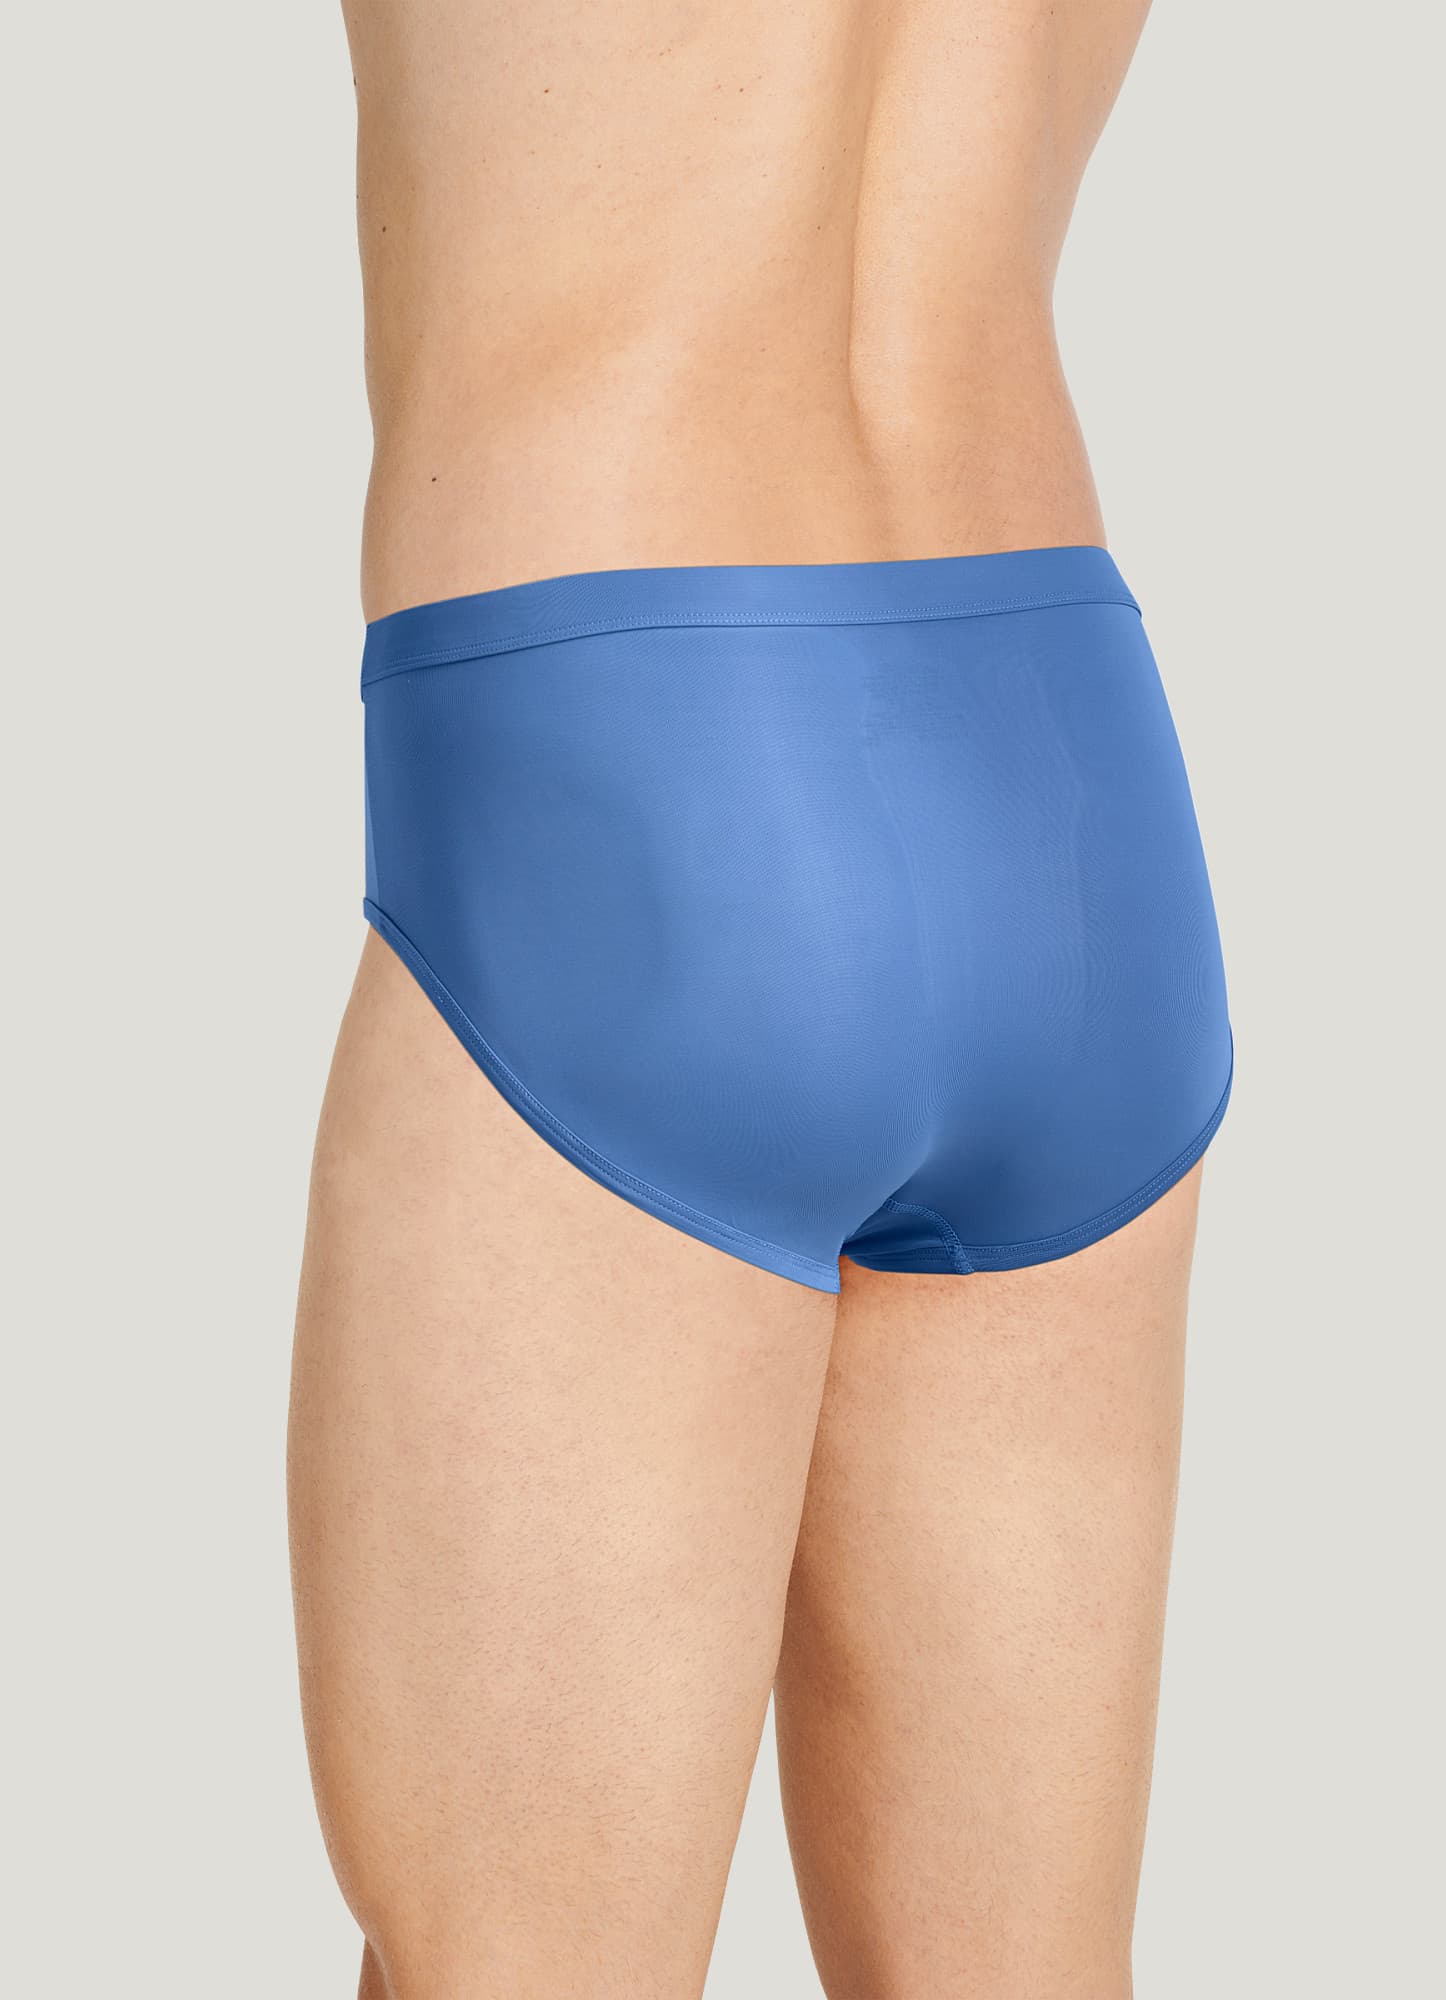 Jockey Men's Underwear, Elance Poco Brief 2 Pack In Pinkoverfl